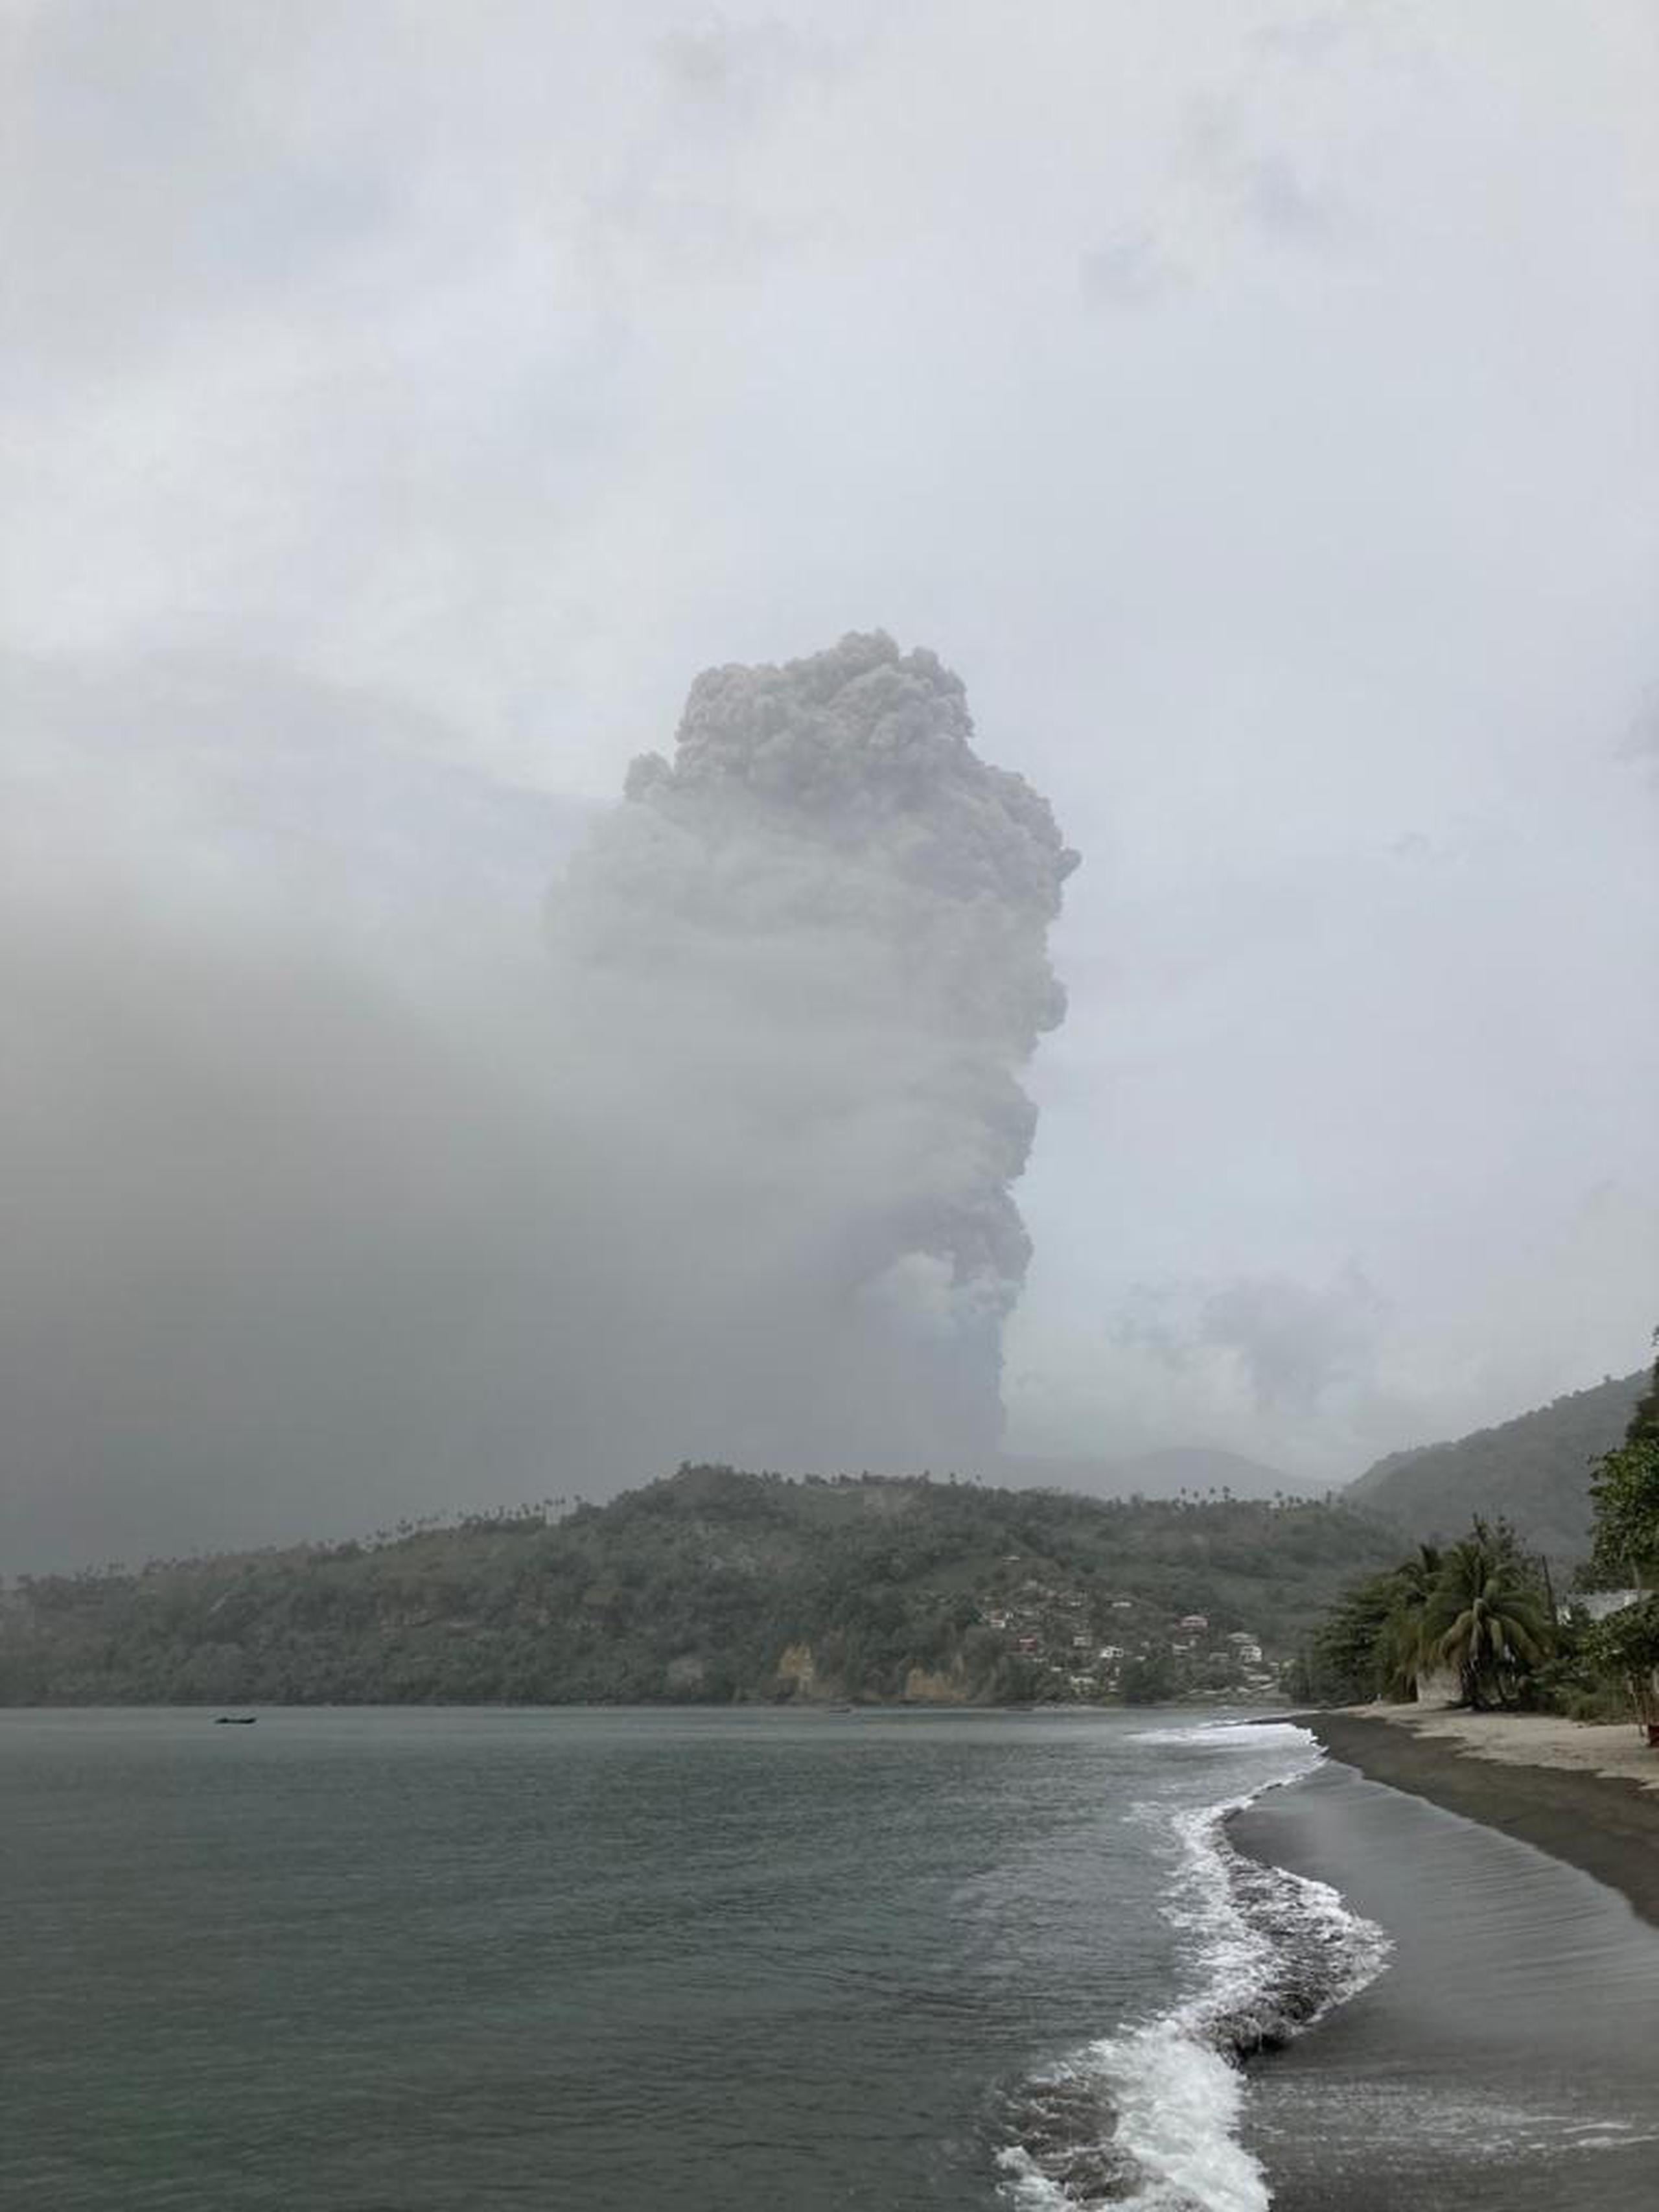 La UWI detalló que la erupción de hoy estuvo precedida de “actividad sísmica” con períodos continuos y breves de movimientos sísmicos.